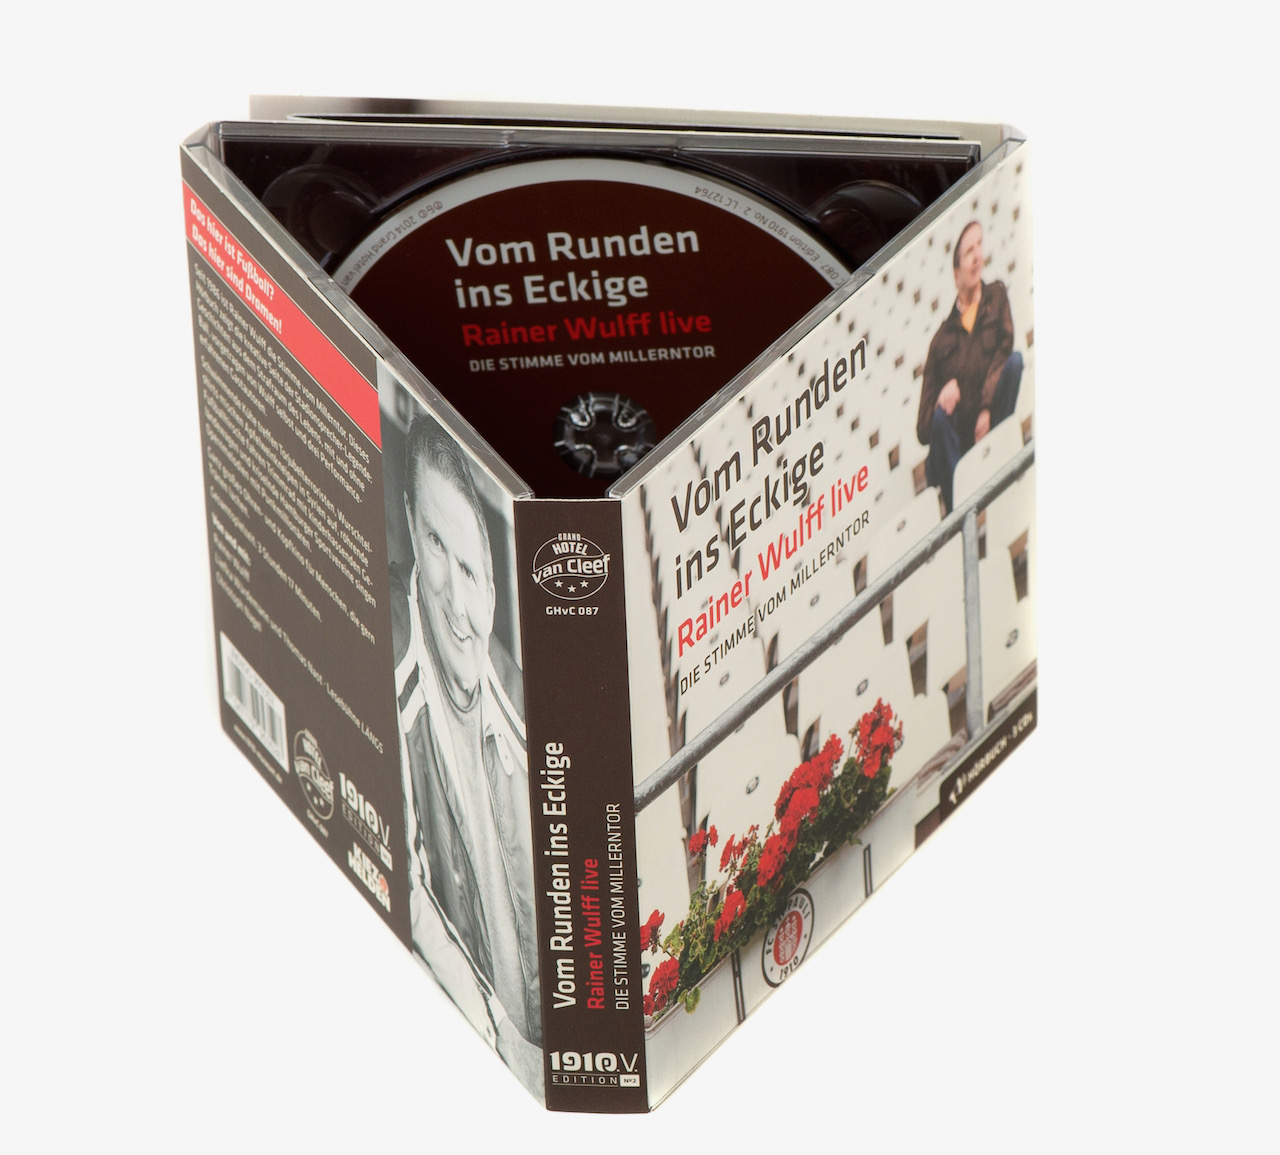 Rainers Wulffs Hörbuch „Vom Runden ins Eckige“ (3 CDs) ist weiterhin erhältlich – im Bundle mit dem Buch besonders günstig!